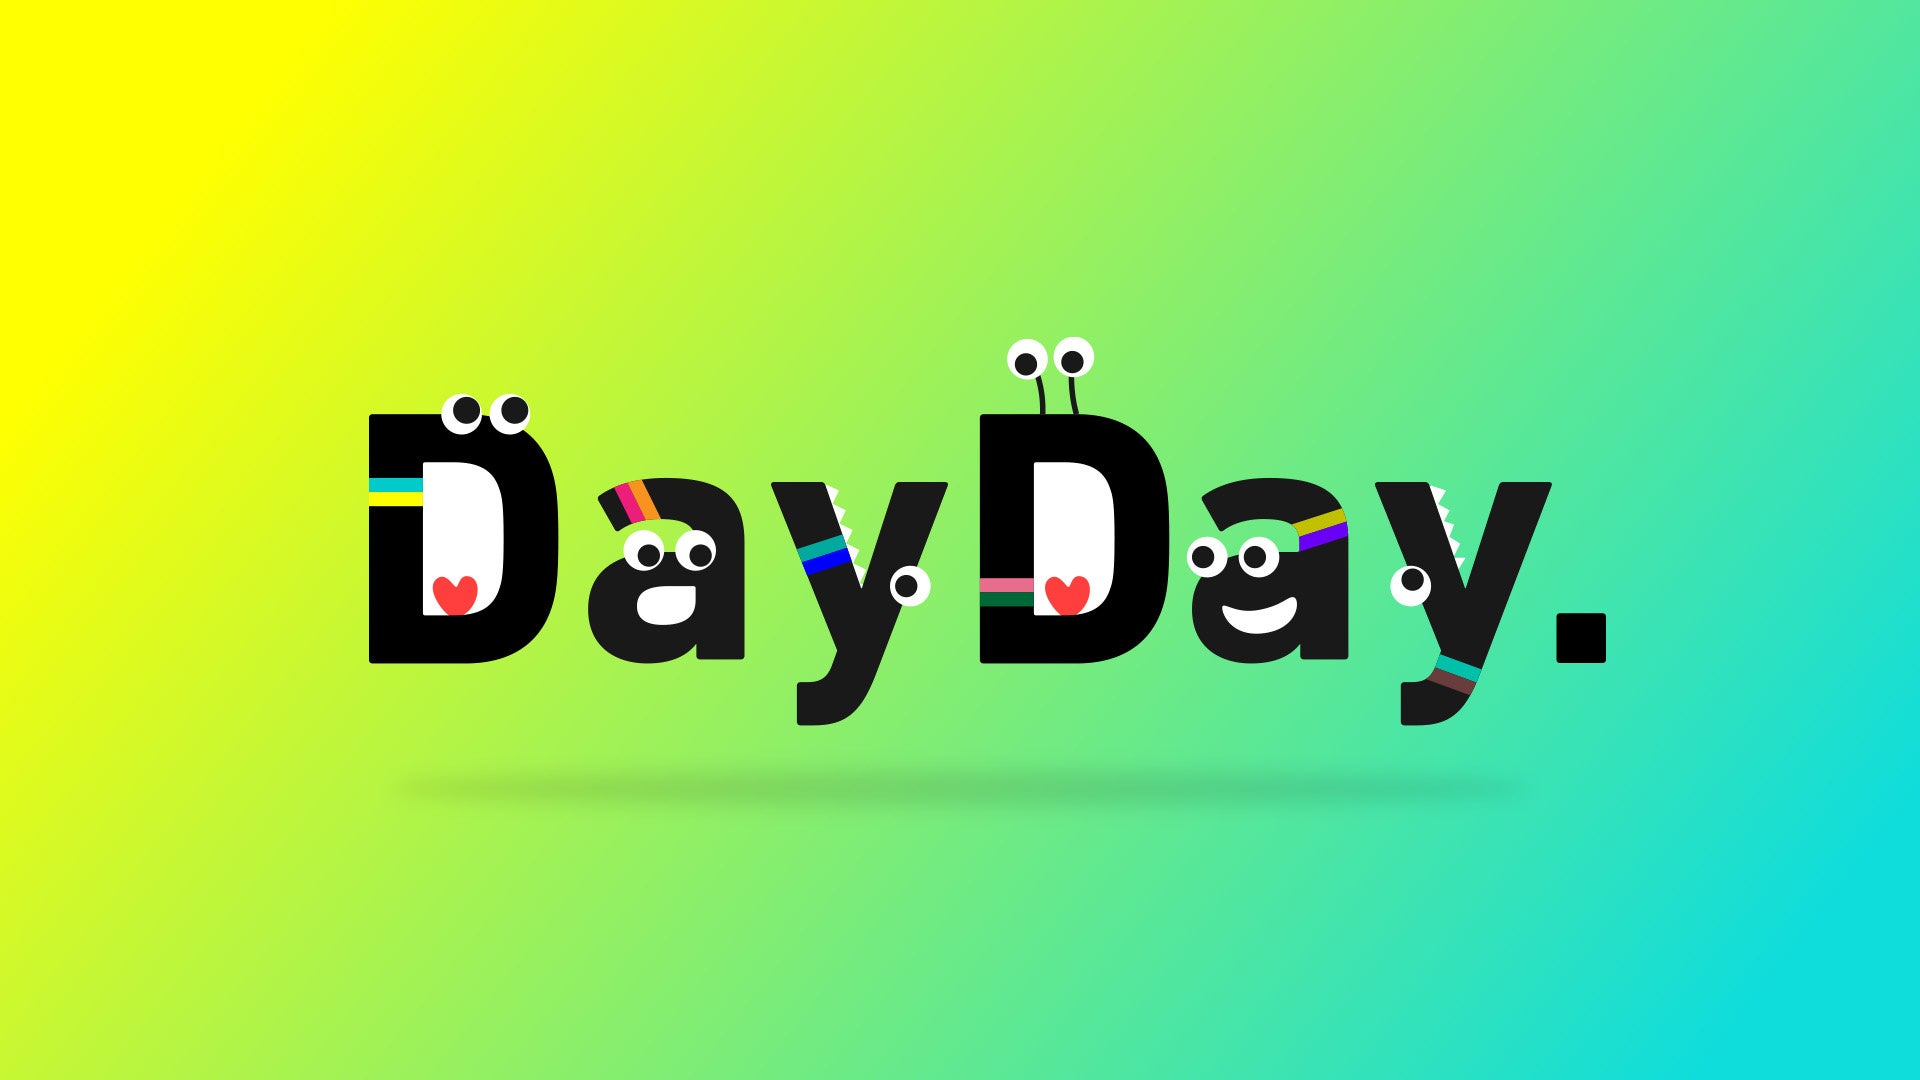 日本テレビ系列で4月3日から放送開始の「DayDay.」にLiveParkの双方向型コミュニケーションプラットフォームを提供